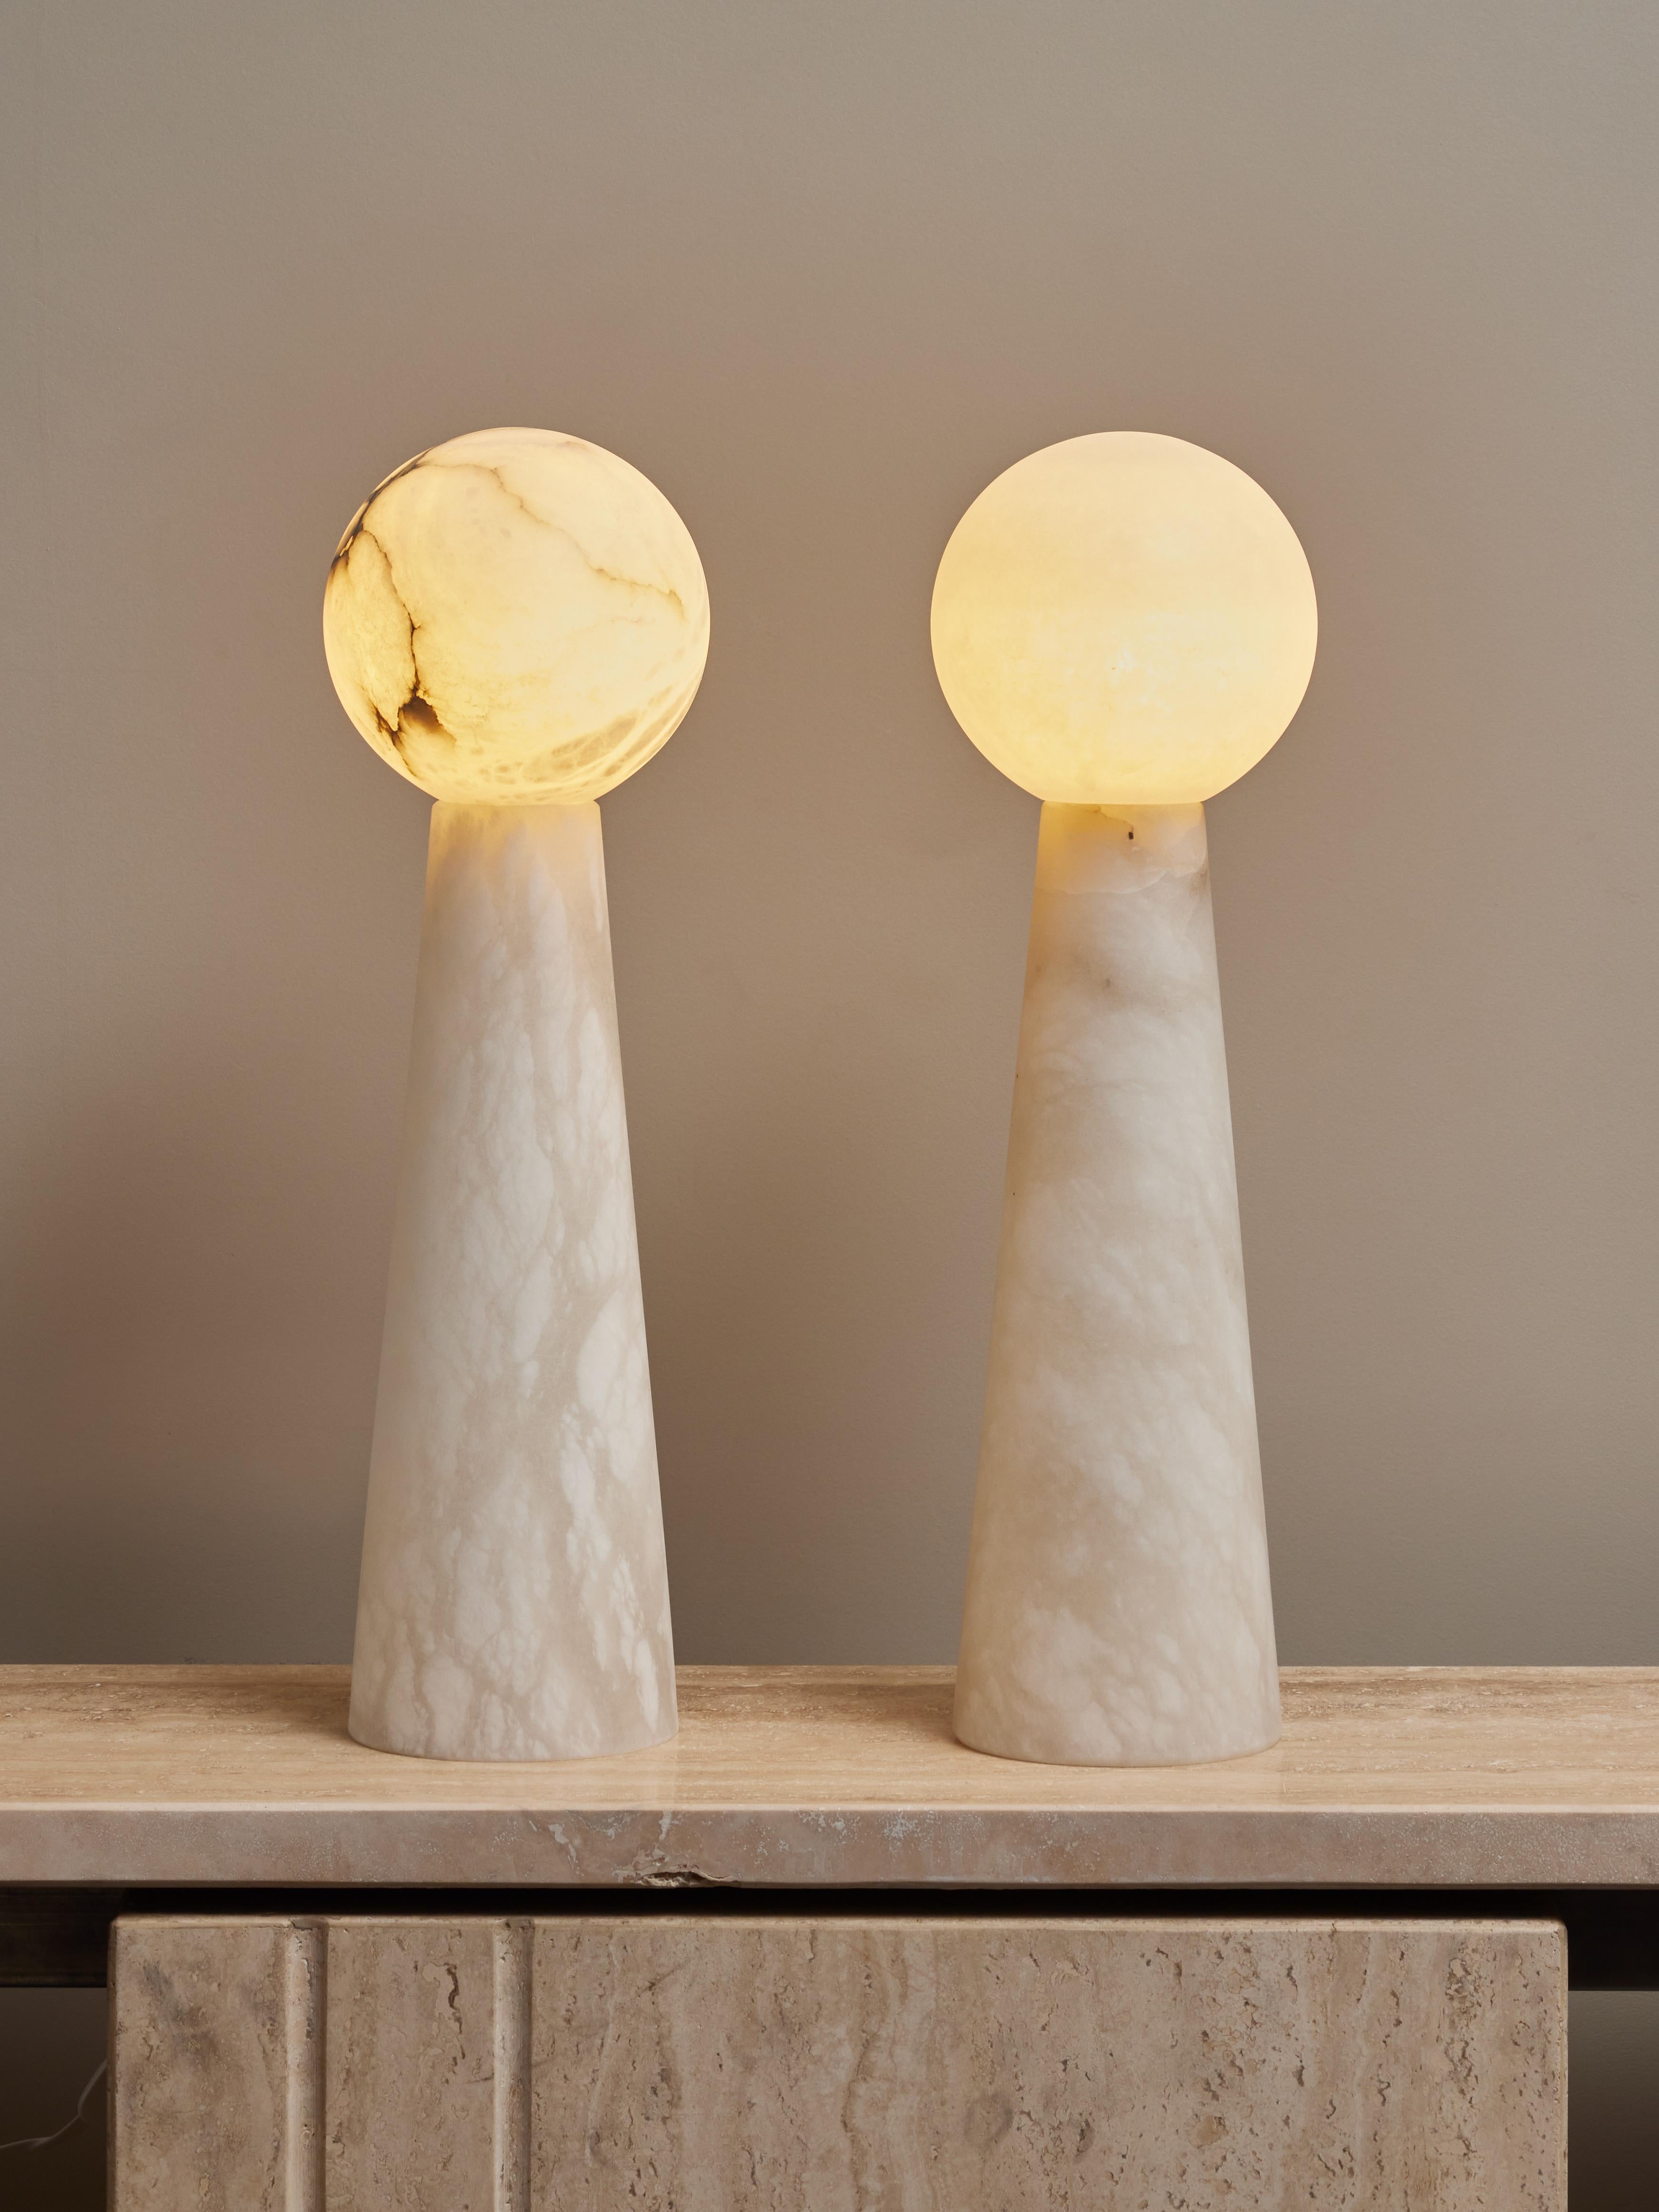 Paire de lampes de table constituées de deux pièces d'albâtre, un pied conique, surmontées d'un globe diffusant la lumière. 